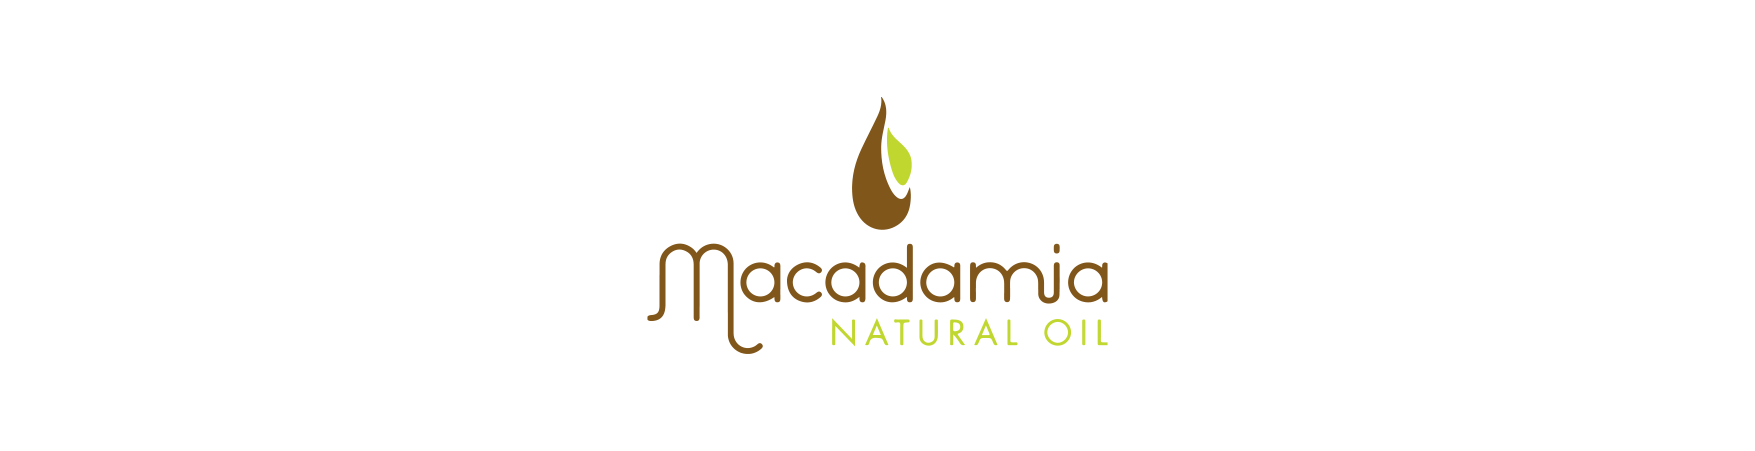 Macadamia Natural